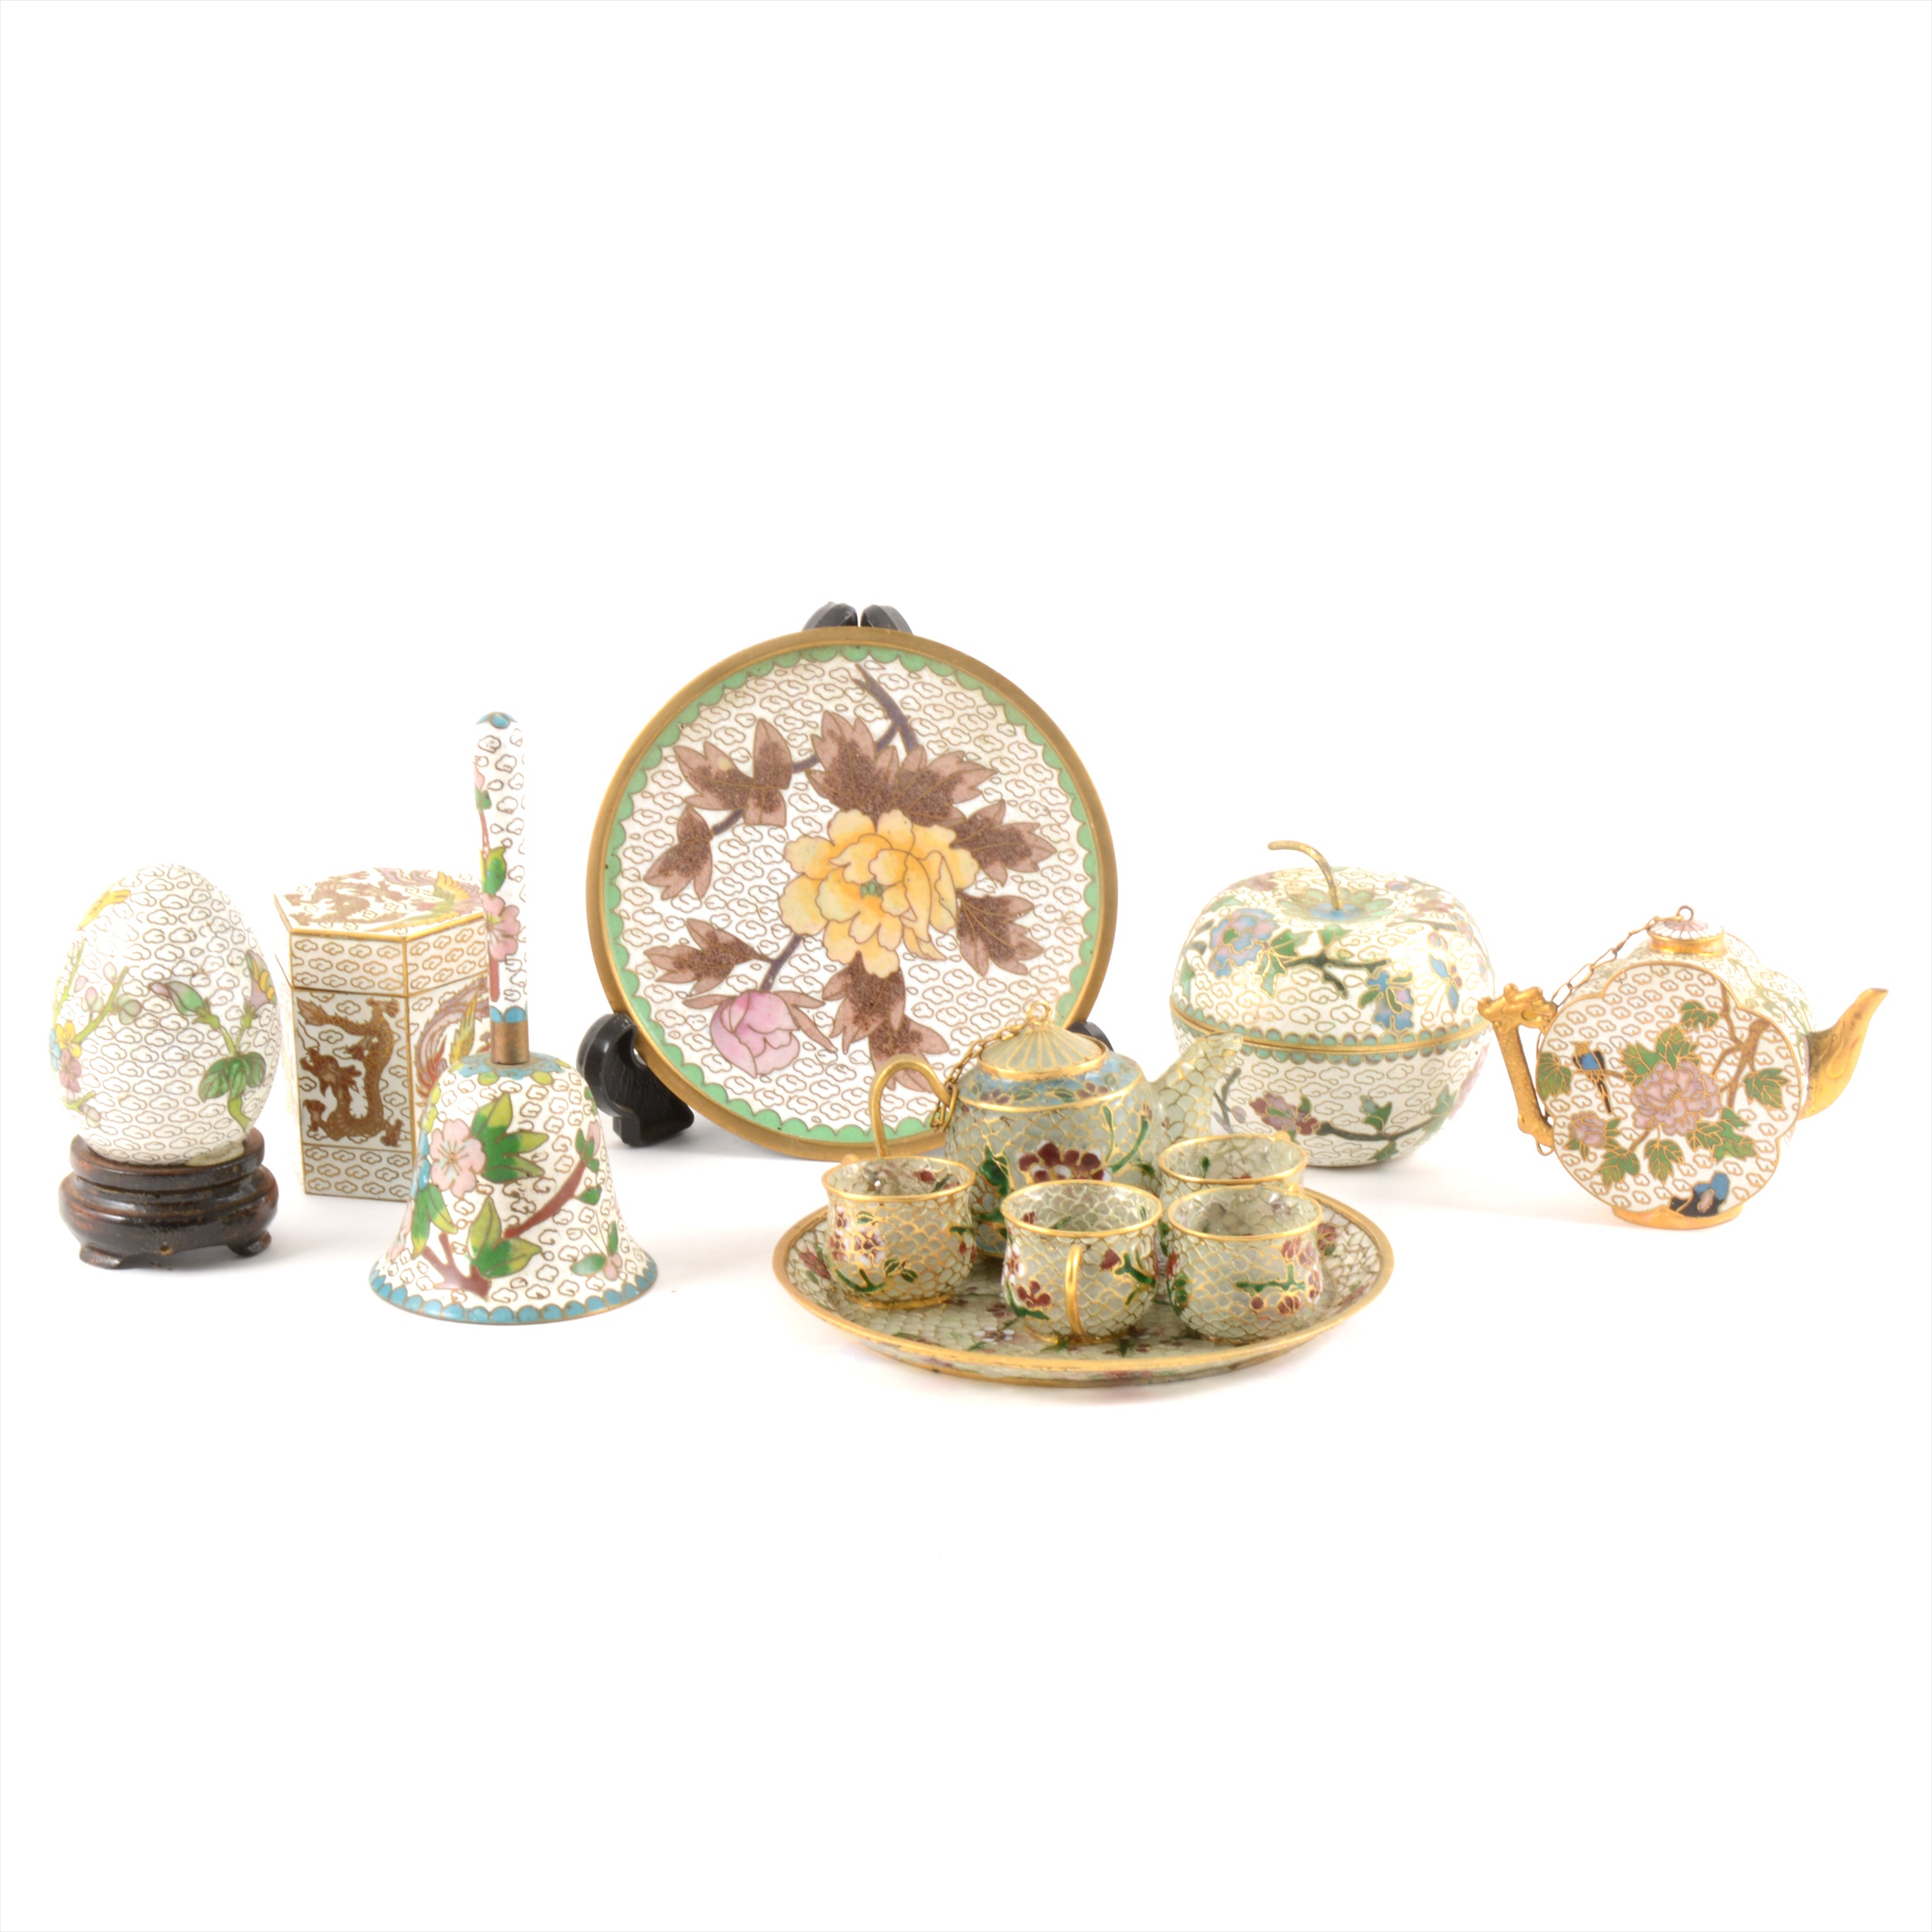 A collection of small cloisonné items and a miniature plique-à-jour teaset